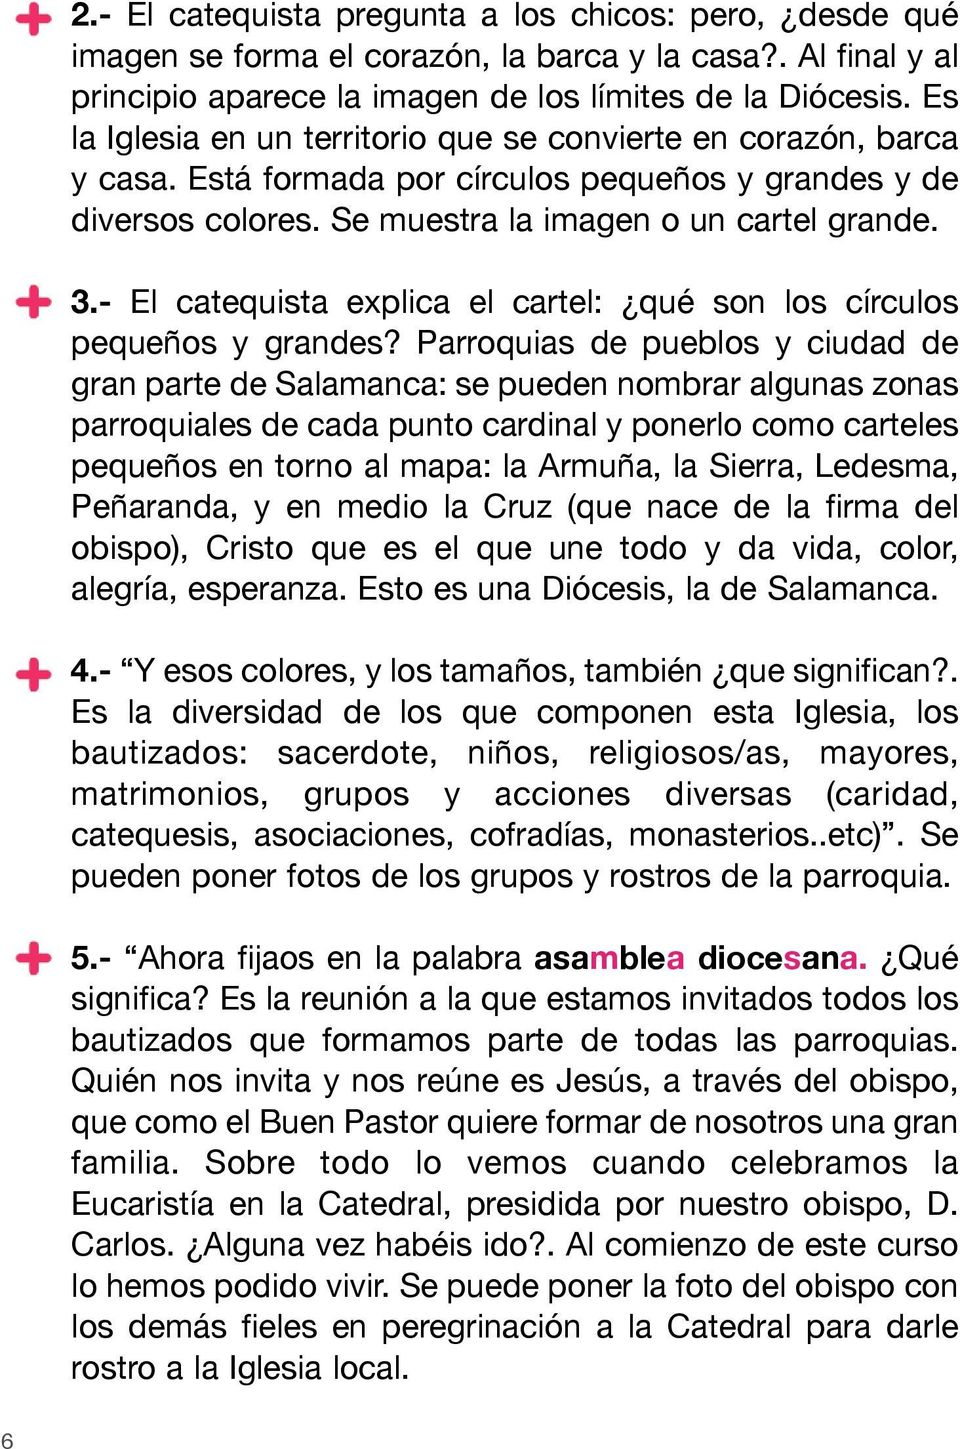 - El catequista explica el cartel: qué son los círculos pequeños y grandes?